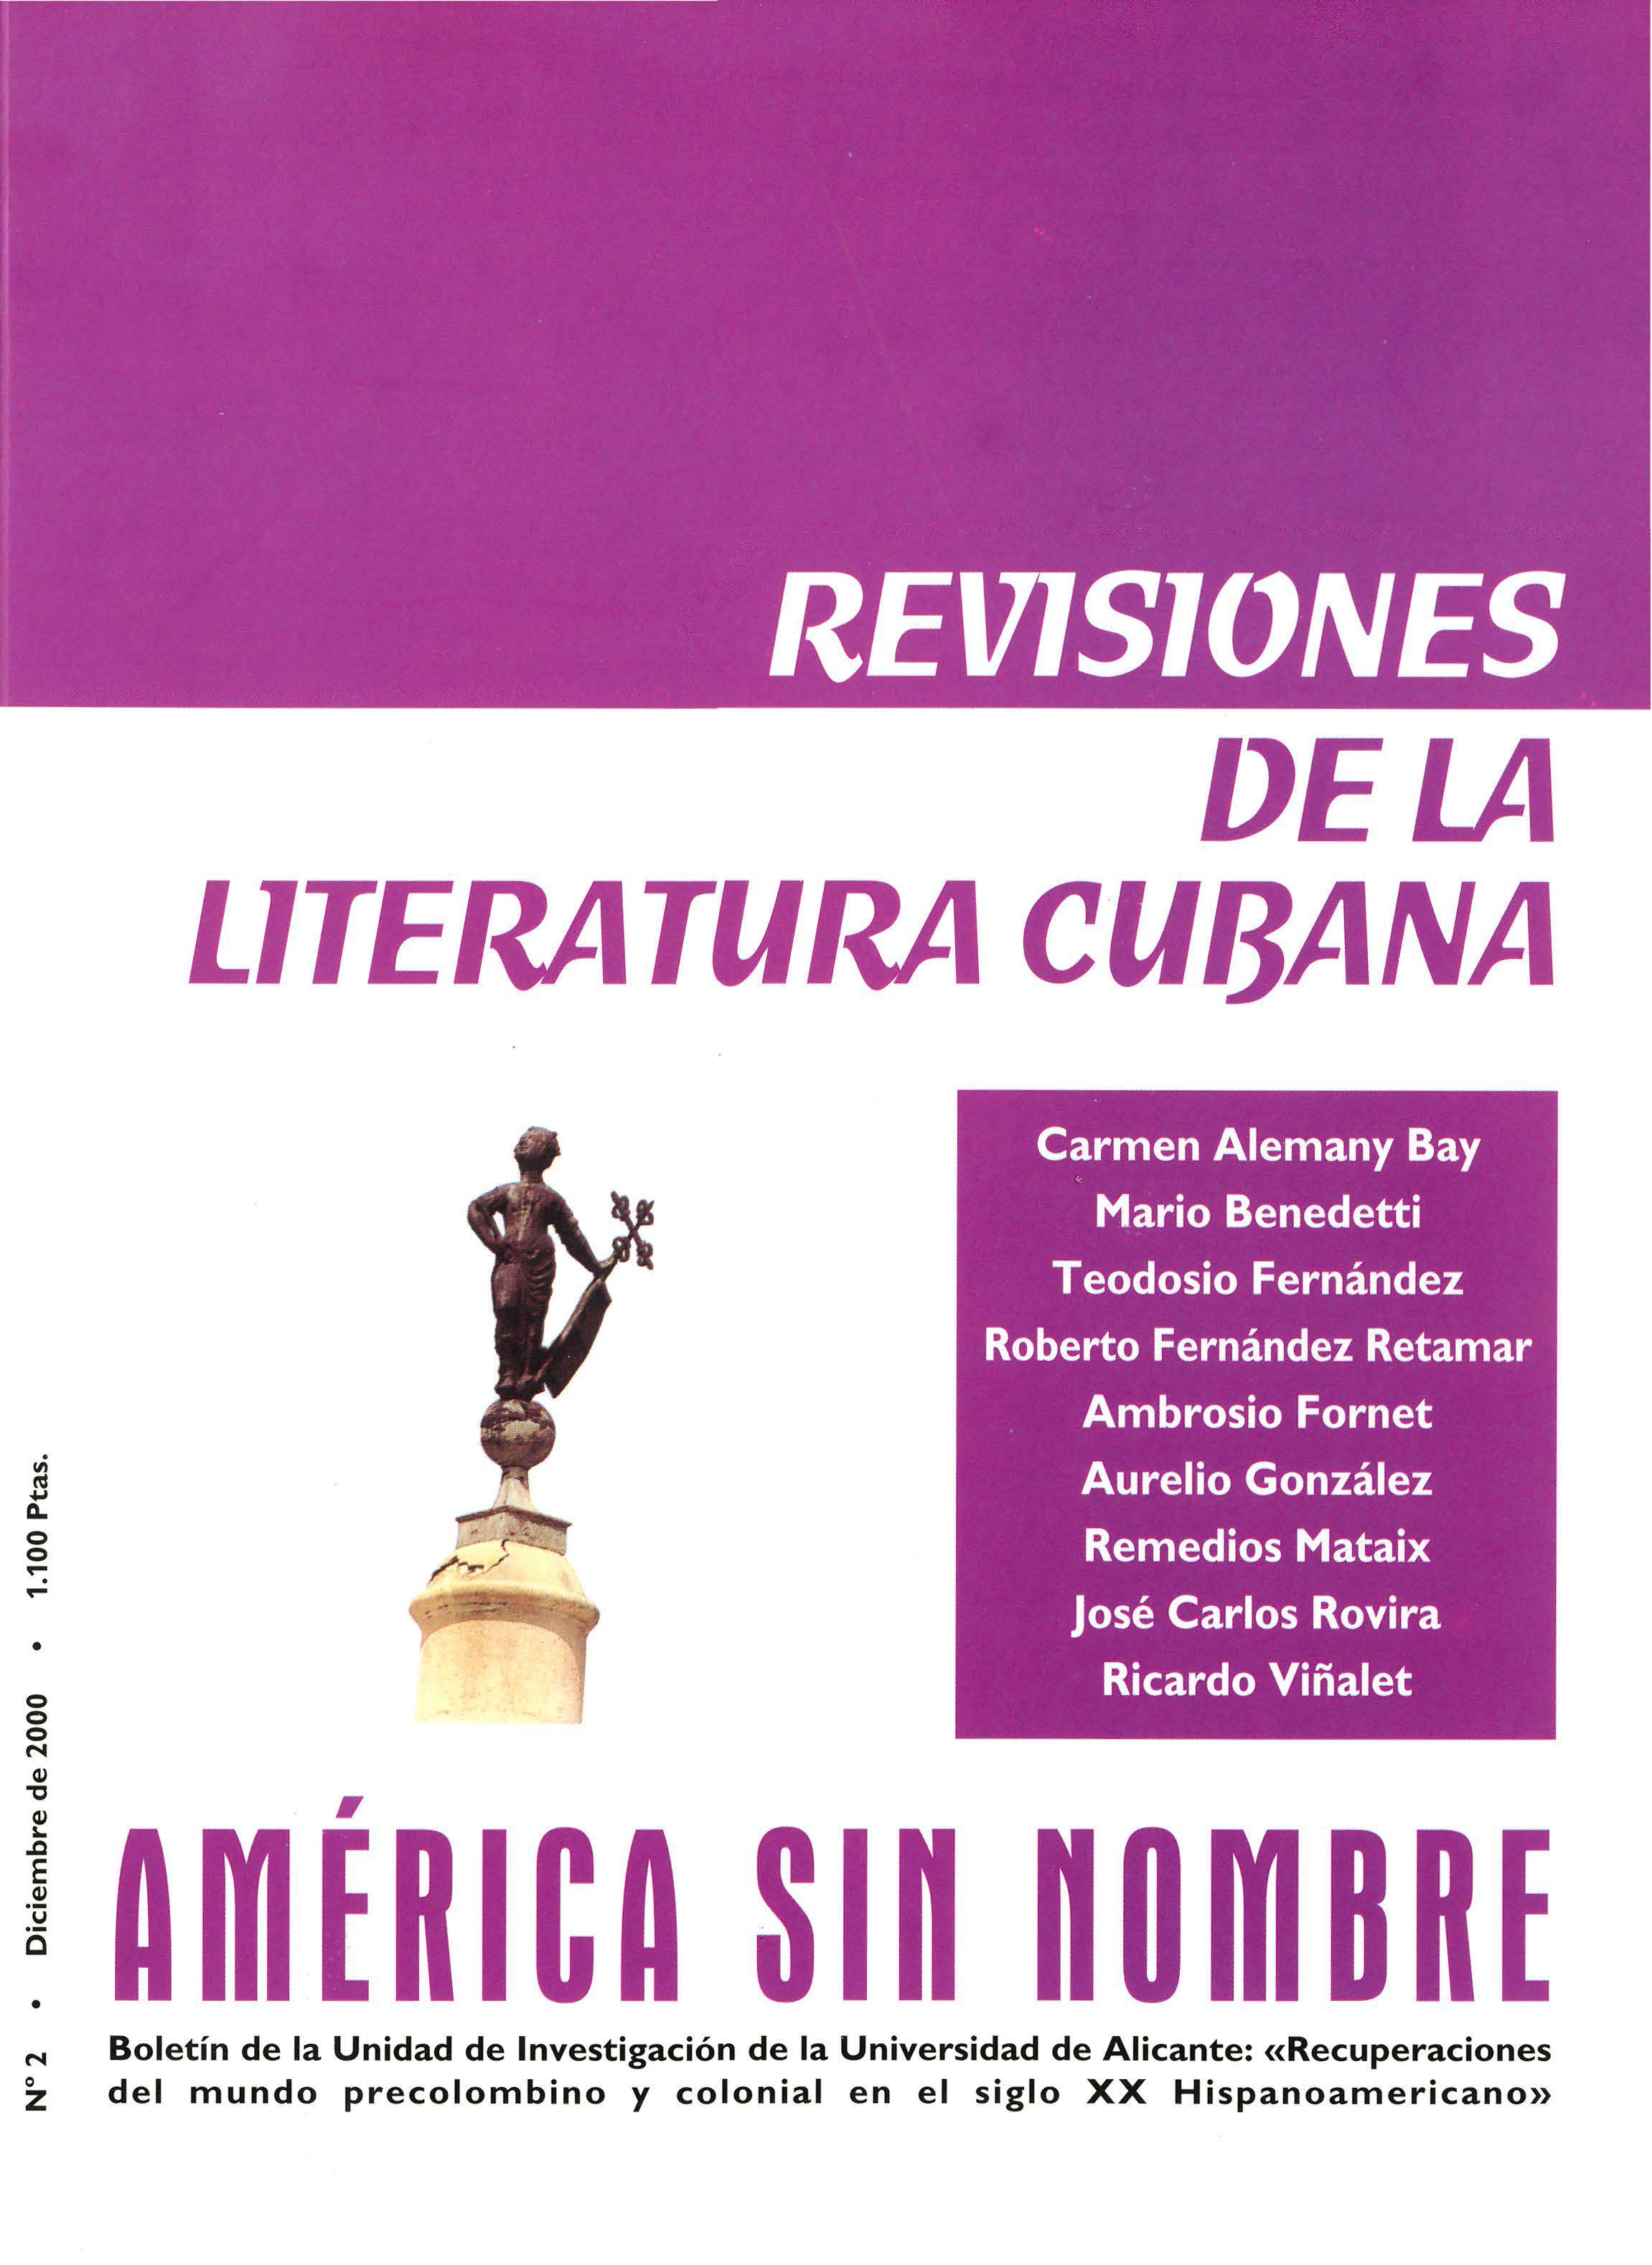 					Ver Núm. 2: Revisiones de la literatura cubana
				